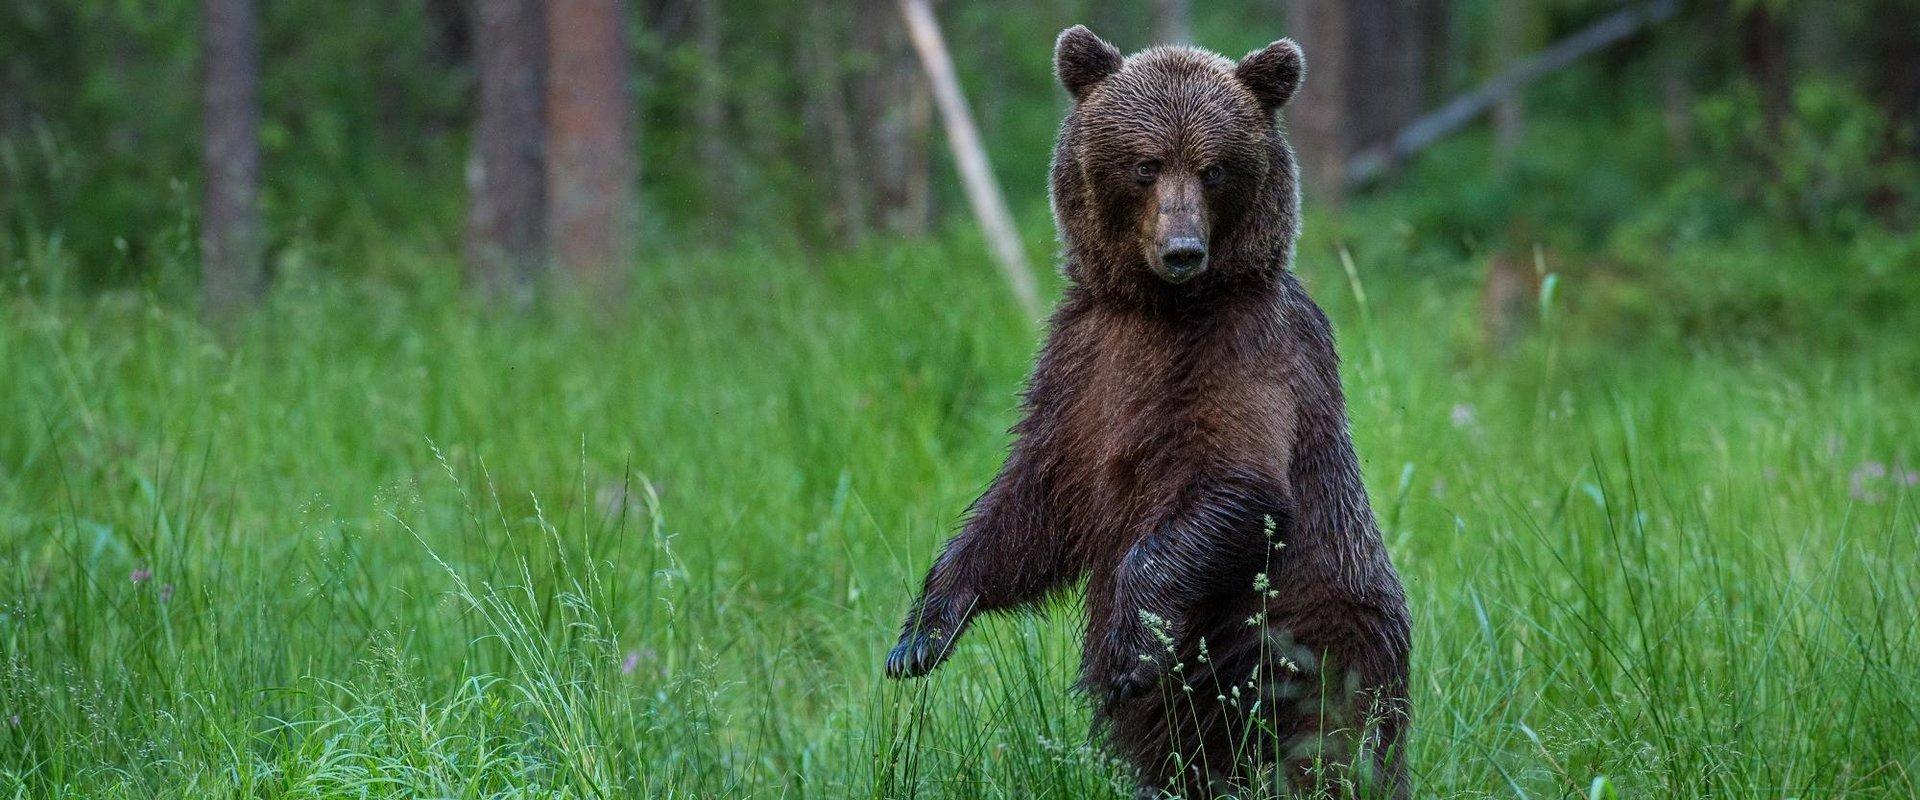 Beobachtung und Fotografieren von Bären in der alten Beobachtungshütte von Alutaguse